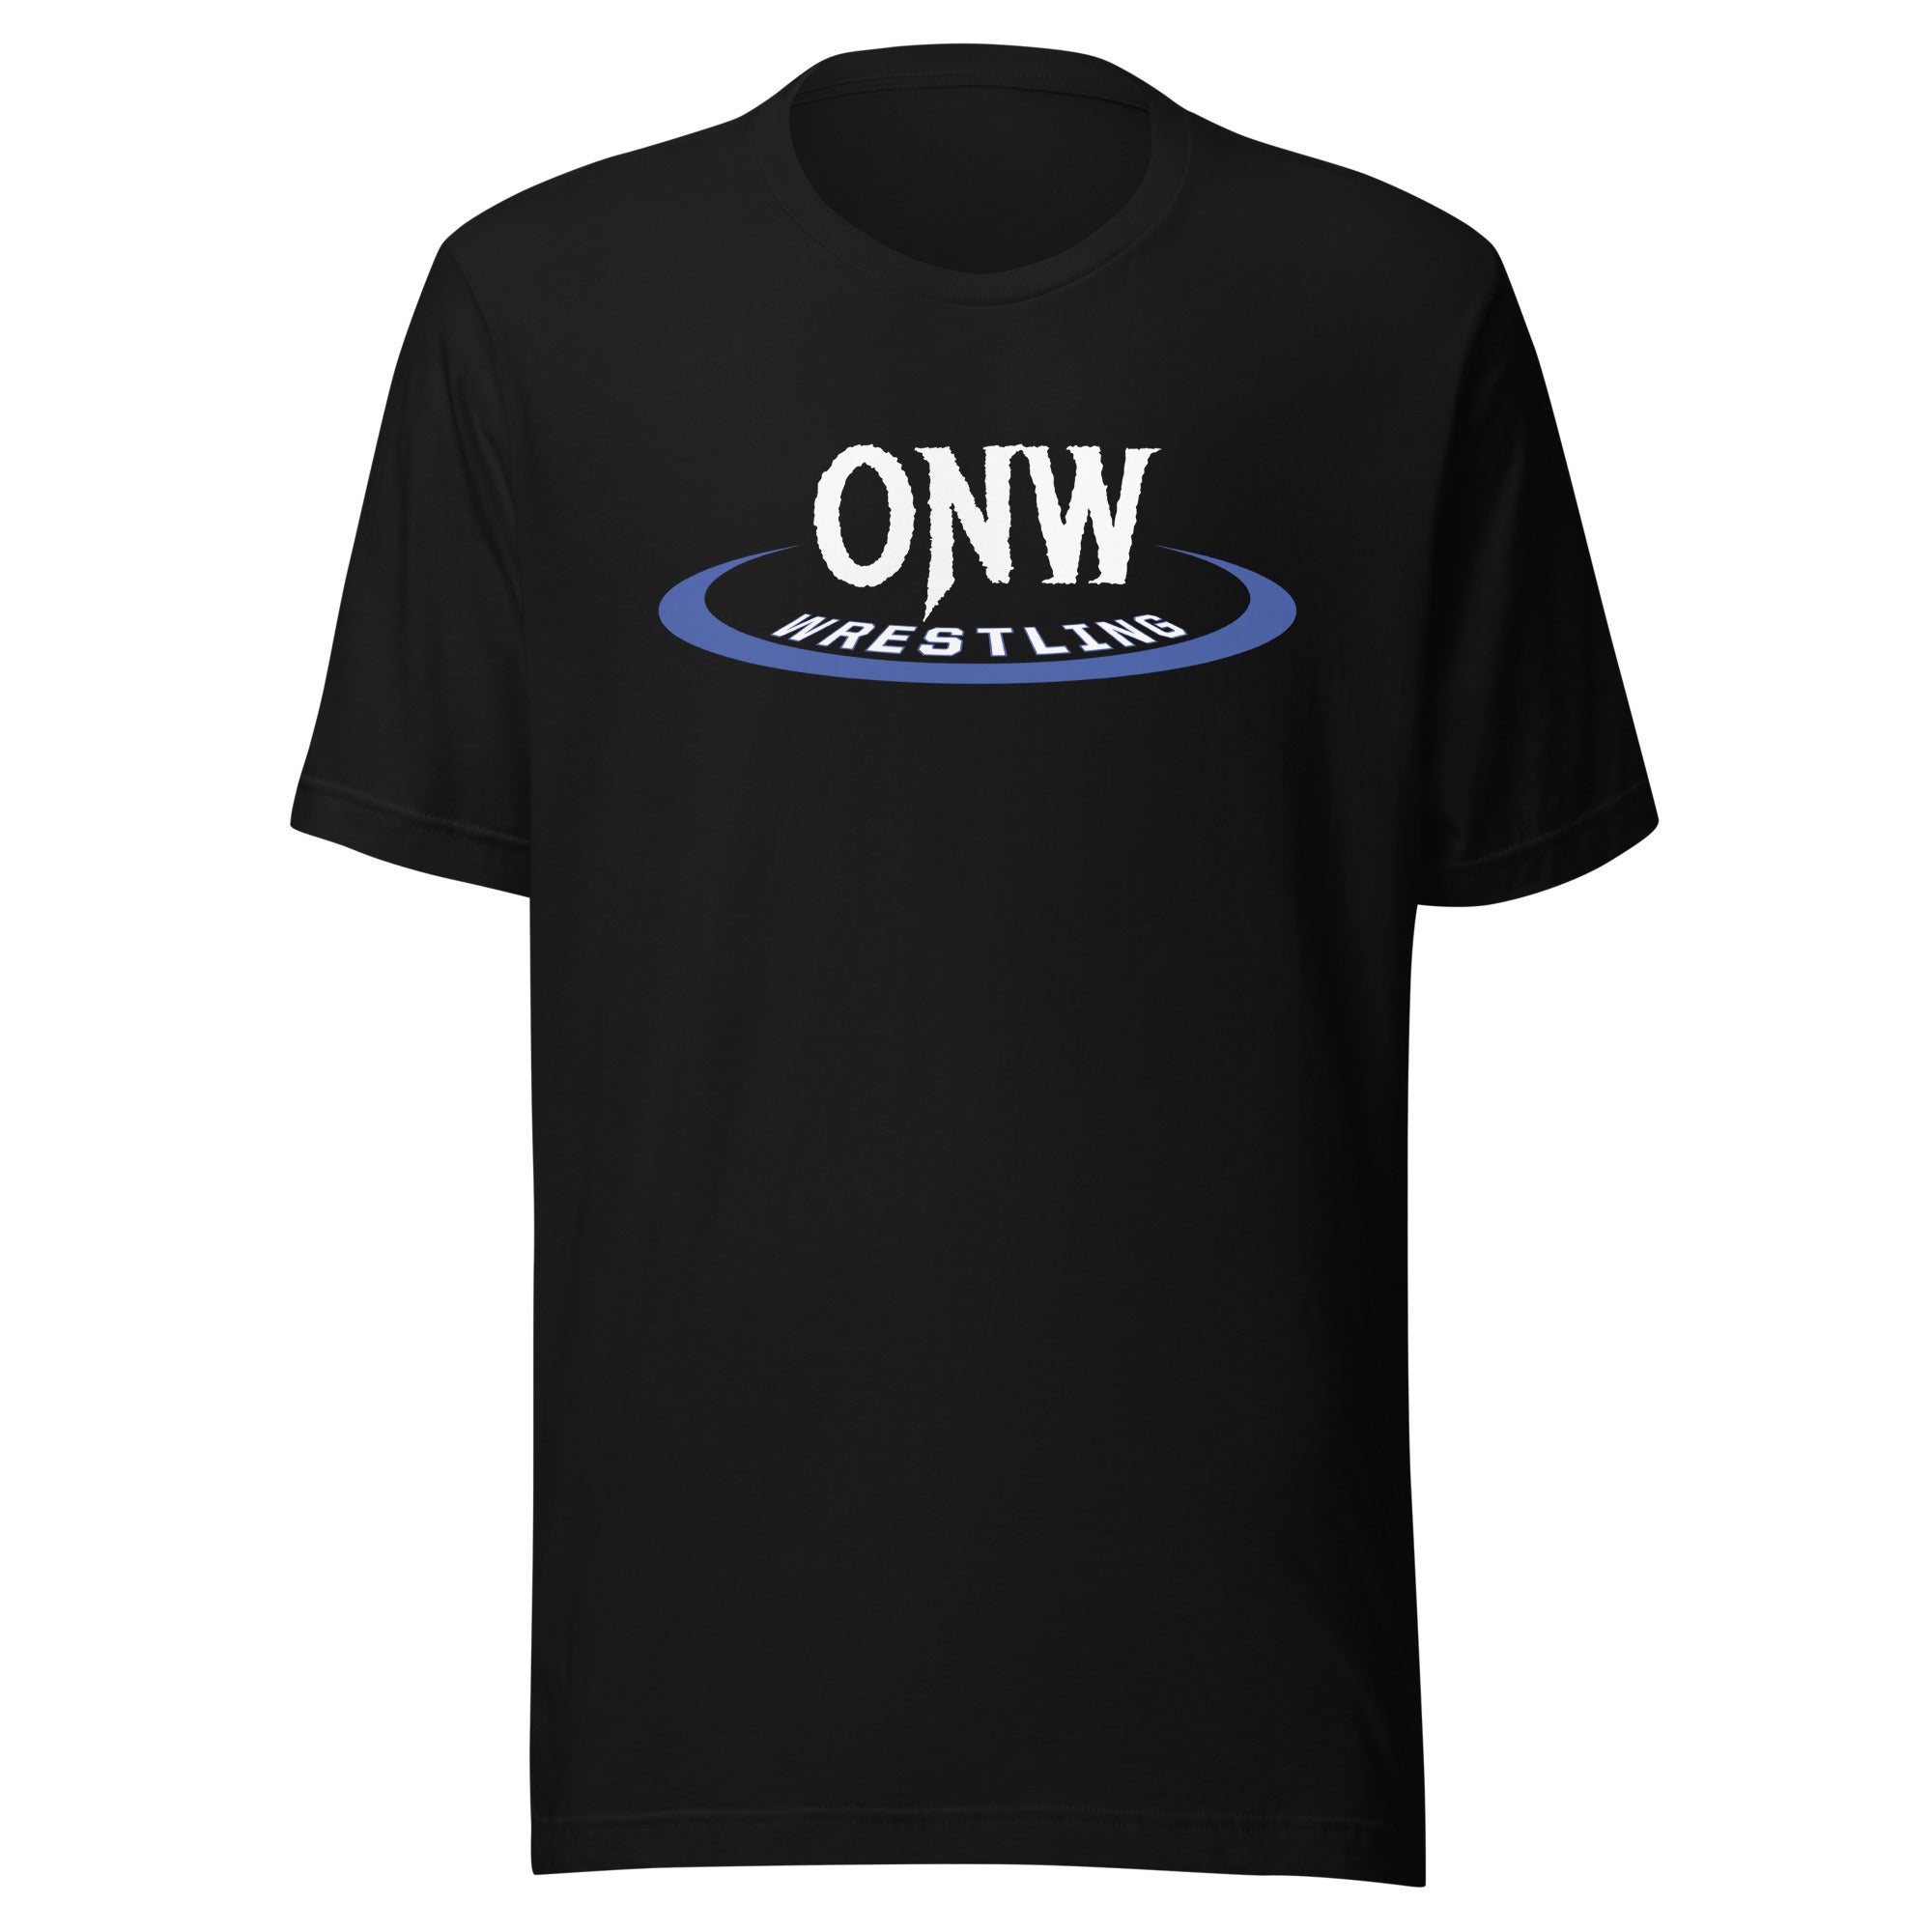 Olathe Northwest HS Wrestling Unisex t-shirt